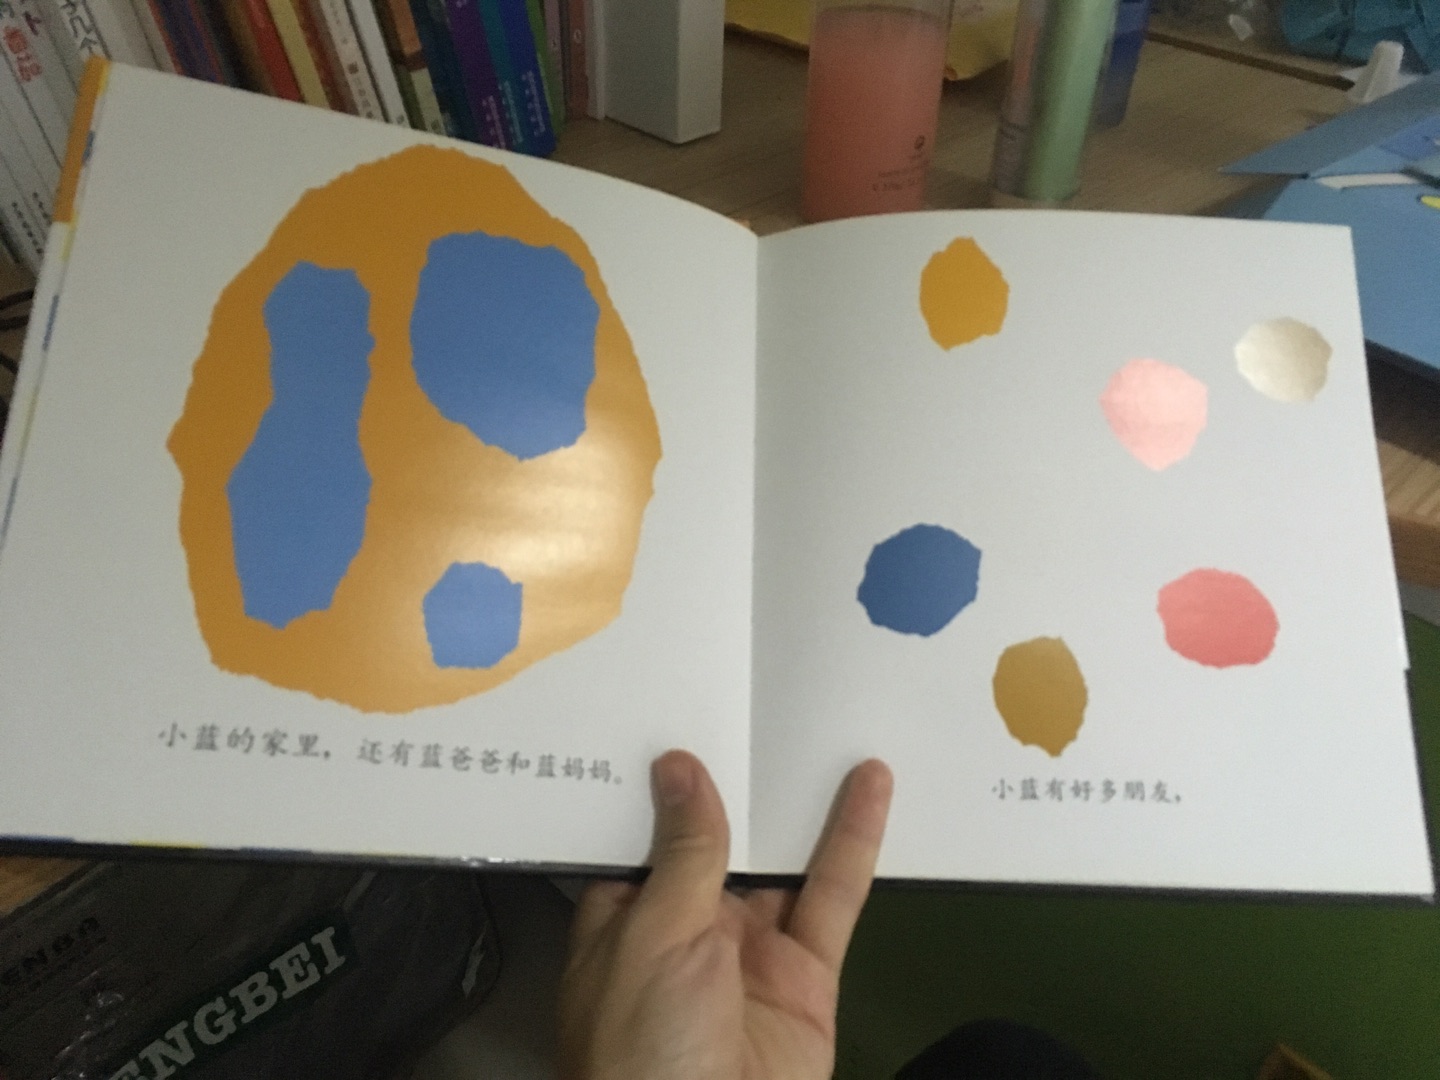 确实一本关于颜色想象力的书。还没给孩子看，不知道会不会令她兴奋